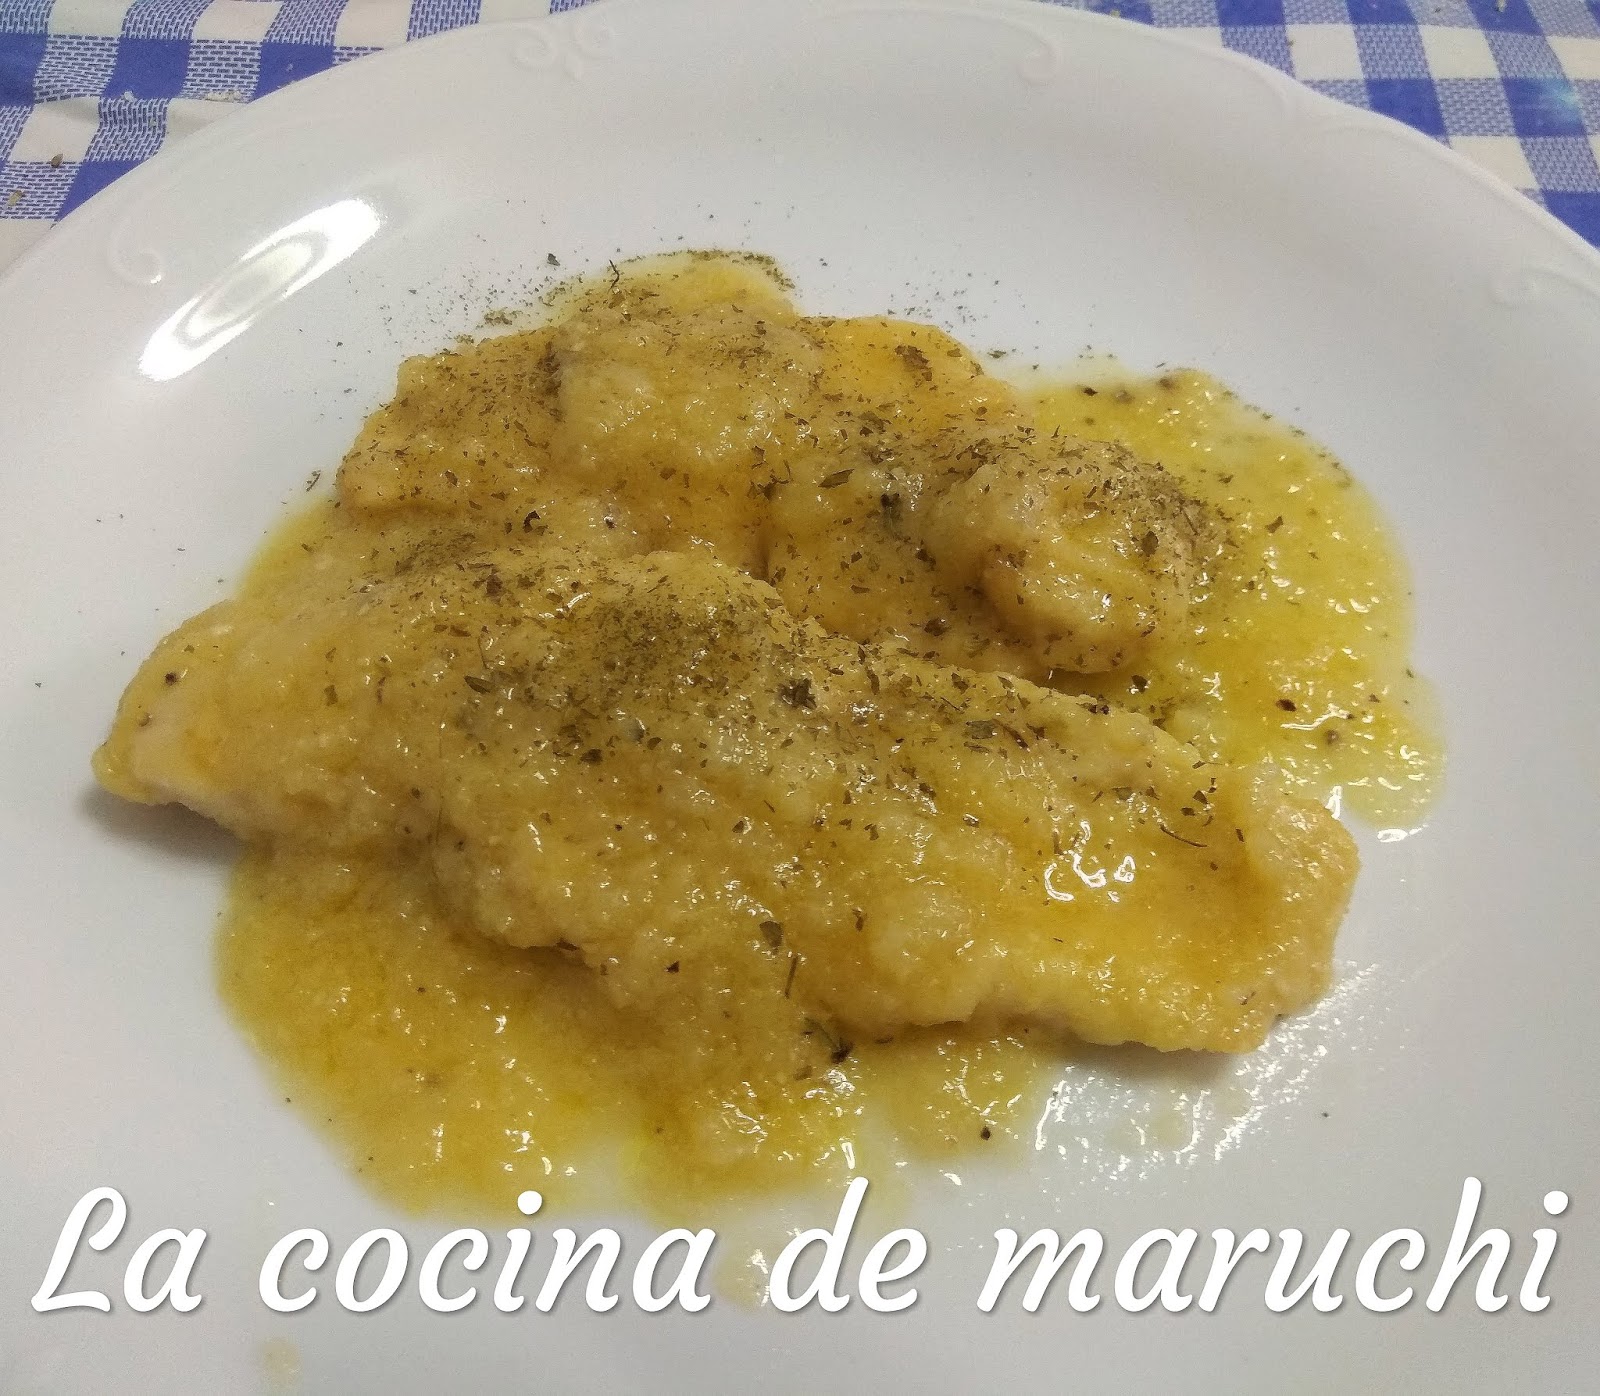 la cocina de maruchi: Los filetes de pollo en salsa de cebolla de Gorka.